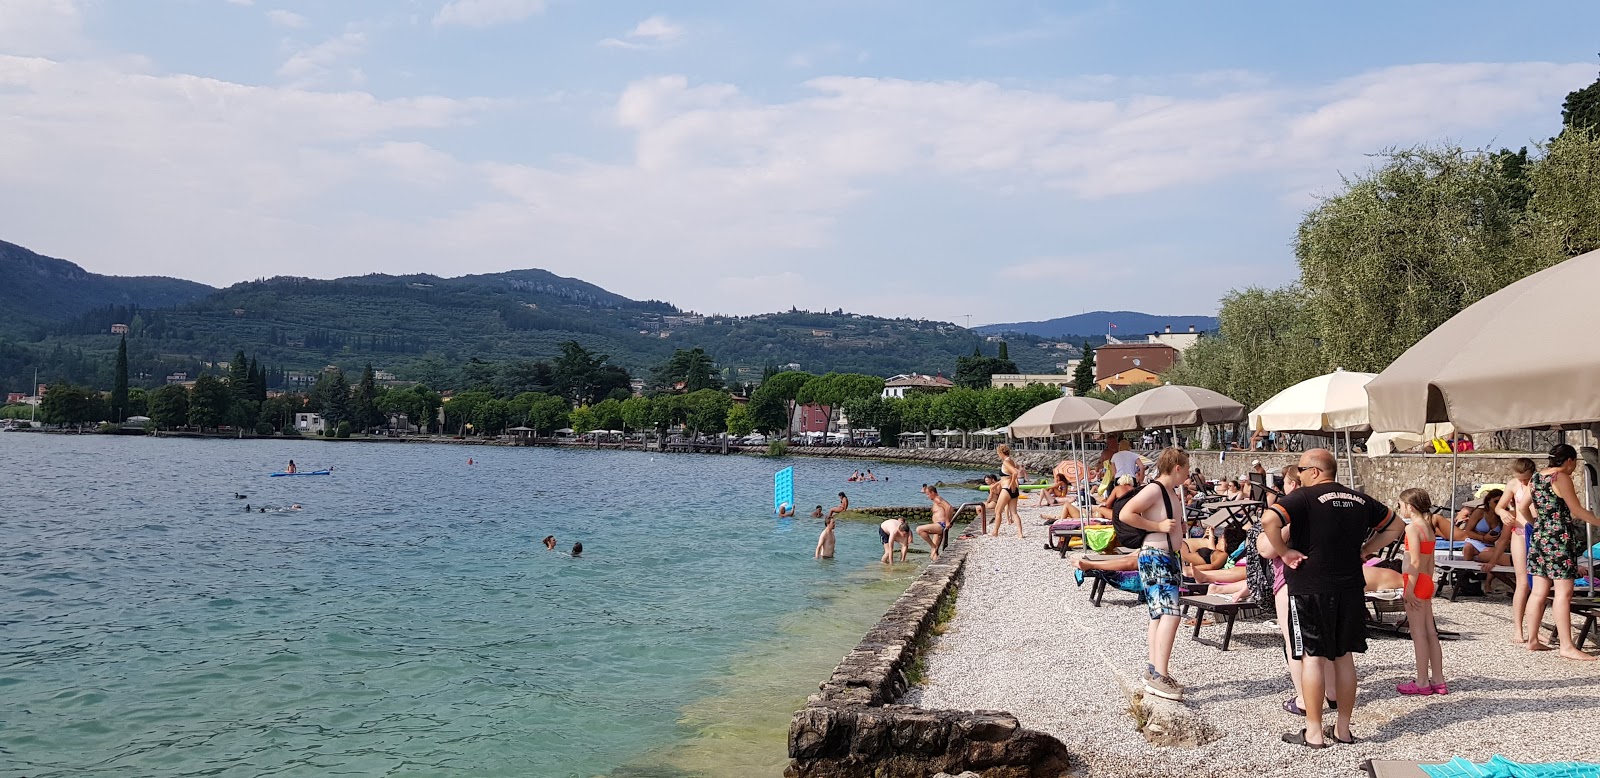 Foto von Spiaggia La Cavalla Garda - beliebter Ort unter Entspannungskennern